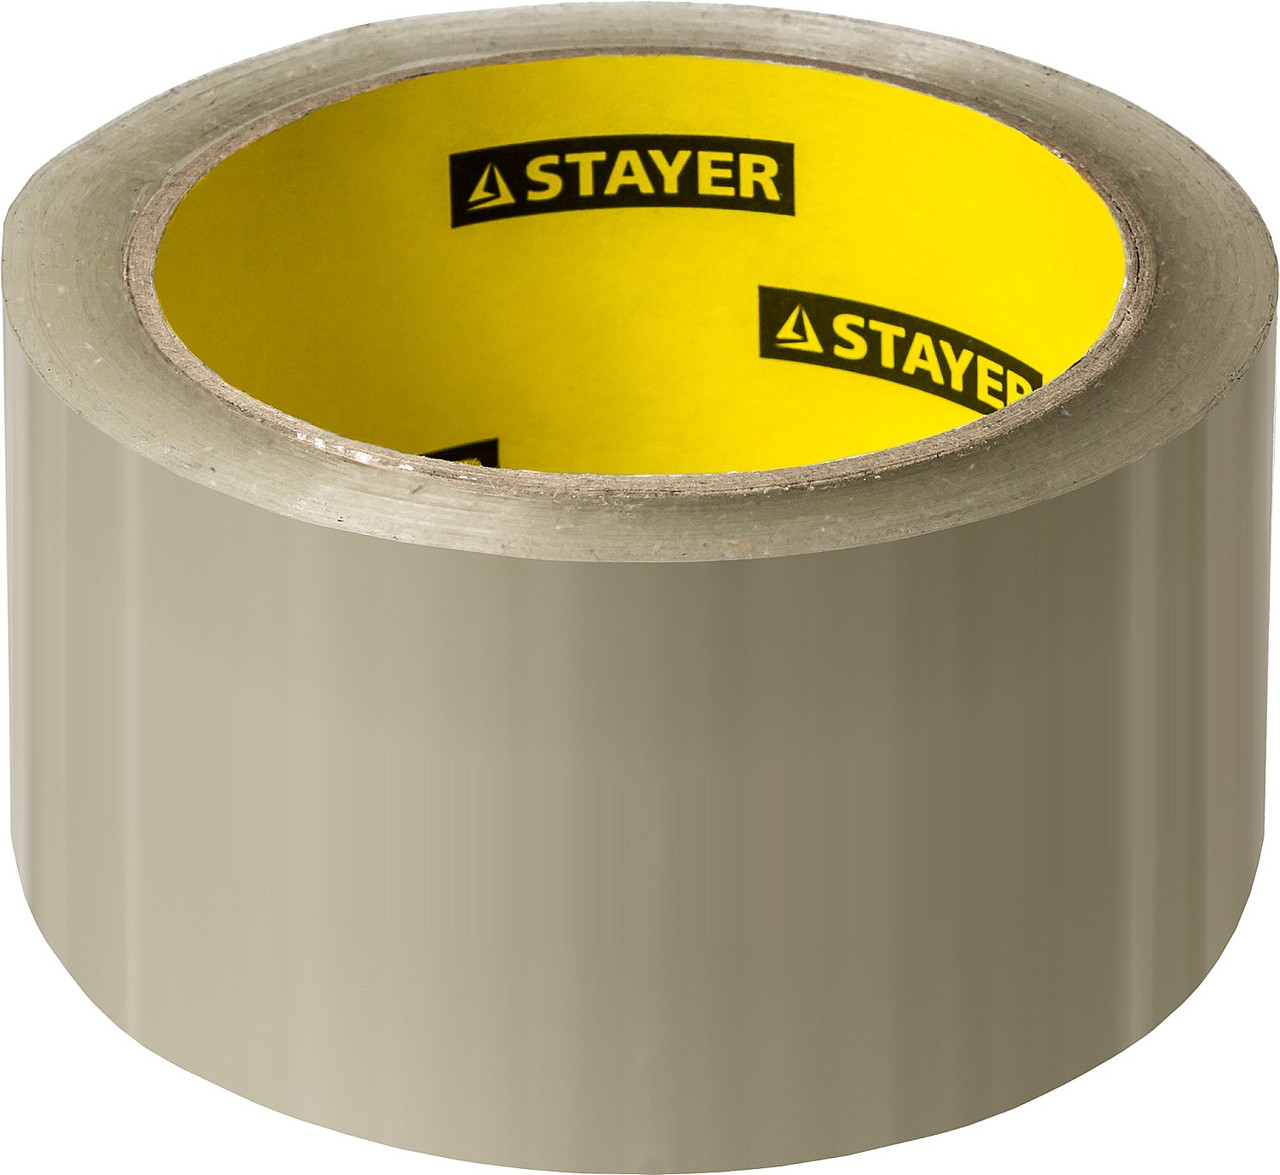 STAYER Max Tape 48 мм, 60 м 45 мкм, Прозрачная клейкая лента MASTER (1204-50)